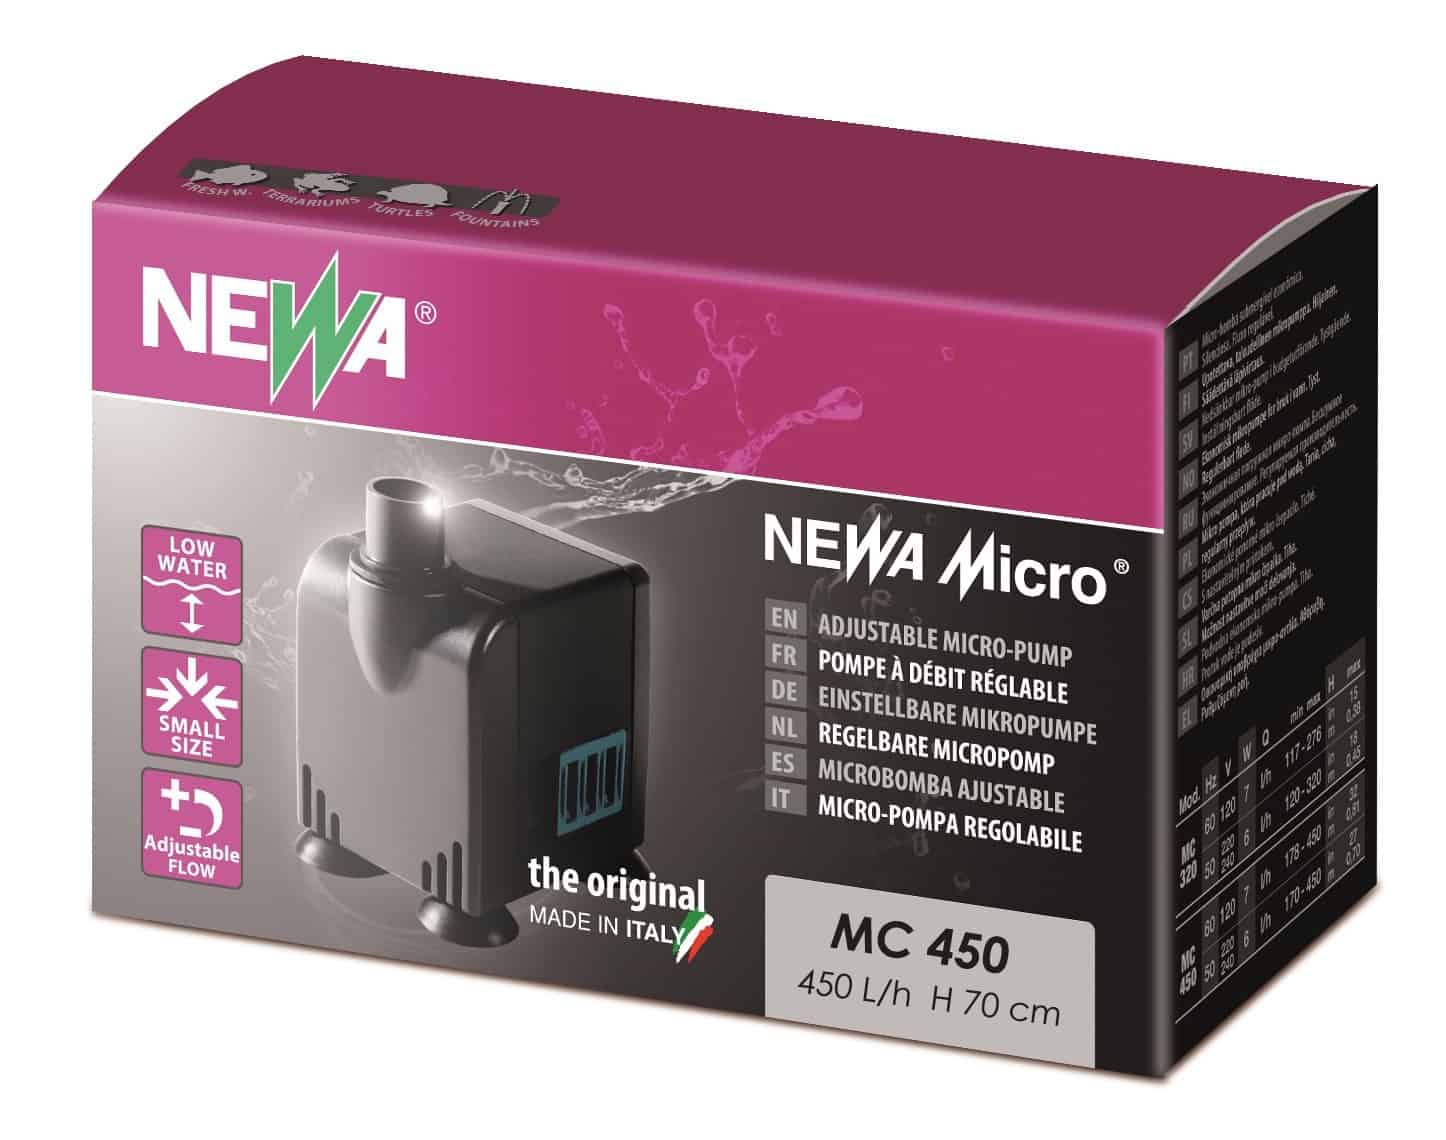 NEWA Micro 450 micro-pompe universelle pour aquarium avec débit réglable de 170 à 450 L/h